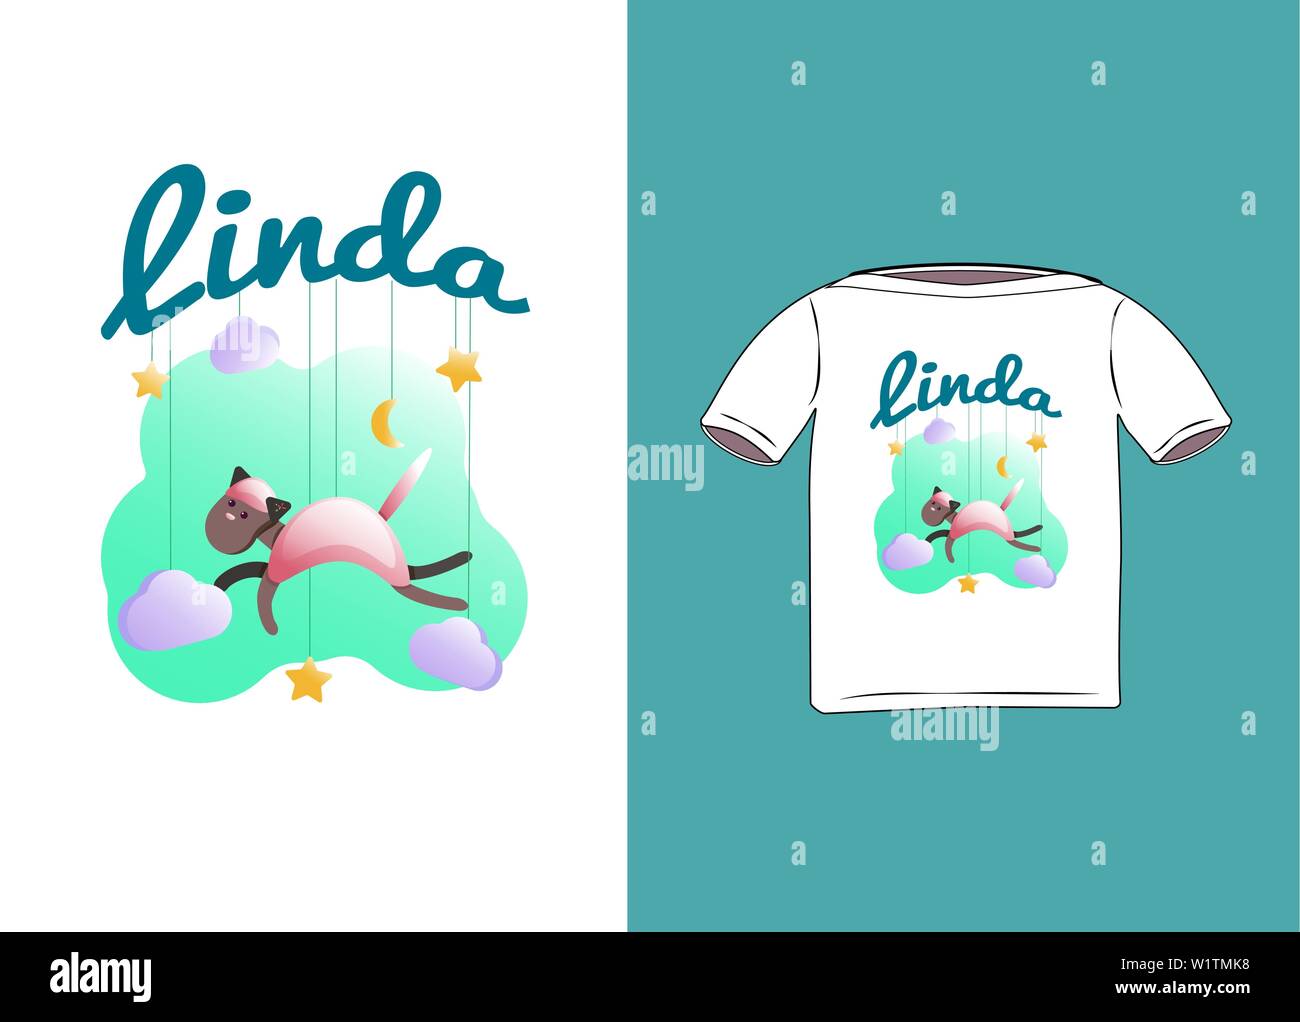 Typographie poster design avec silhouette de chat rose et l'expression 'Linda', étoile, ciel, nuage, lune. Lettrage d'inspiration avec l'animal. Imprimer pour T-shir Illustration de Vecteur